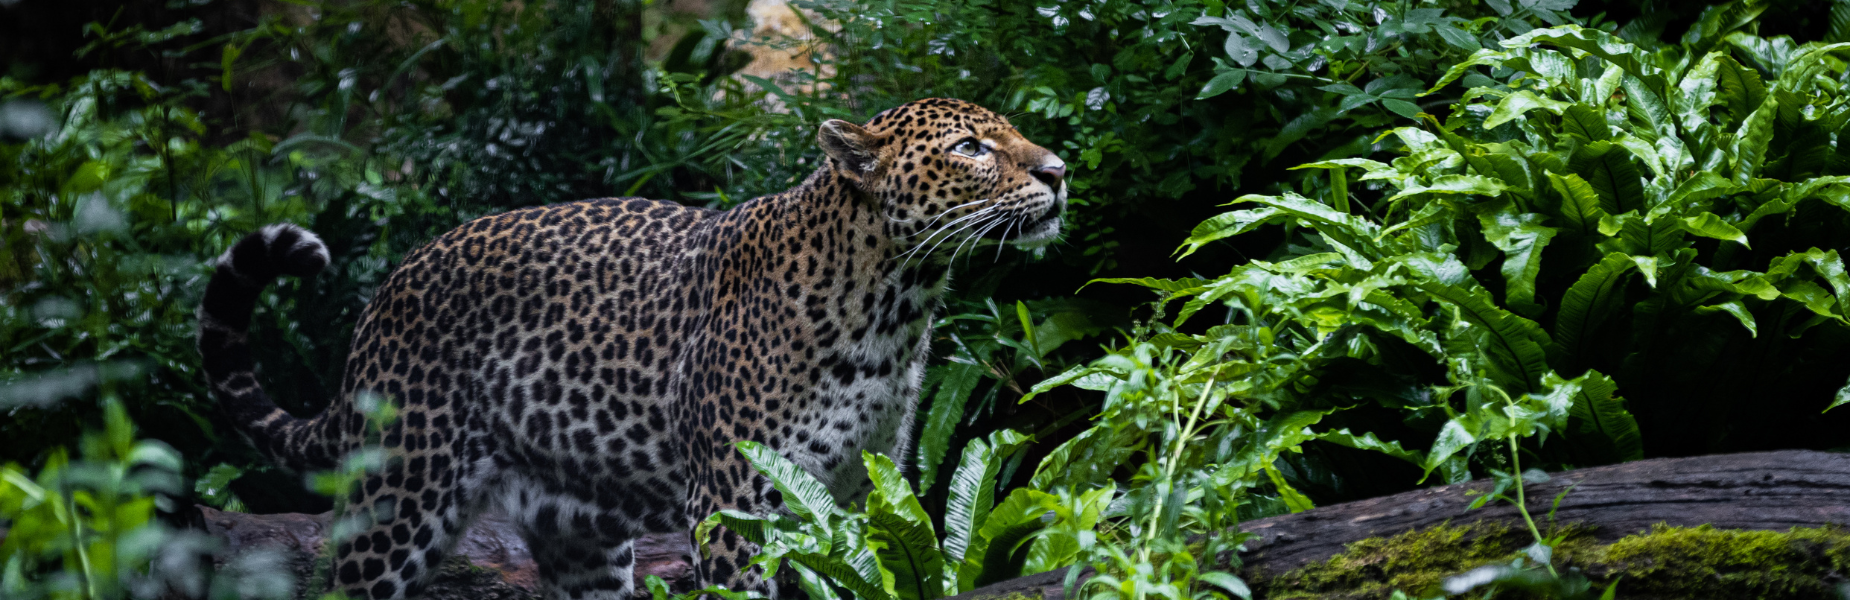 Het zijaanzicht van een luipaard die omhoog kijkt in de jungle, met rechts een tak